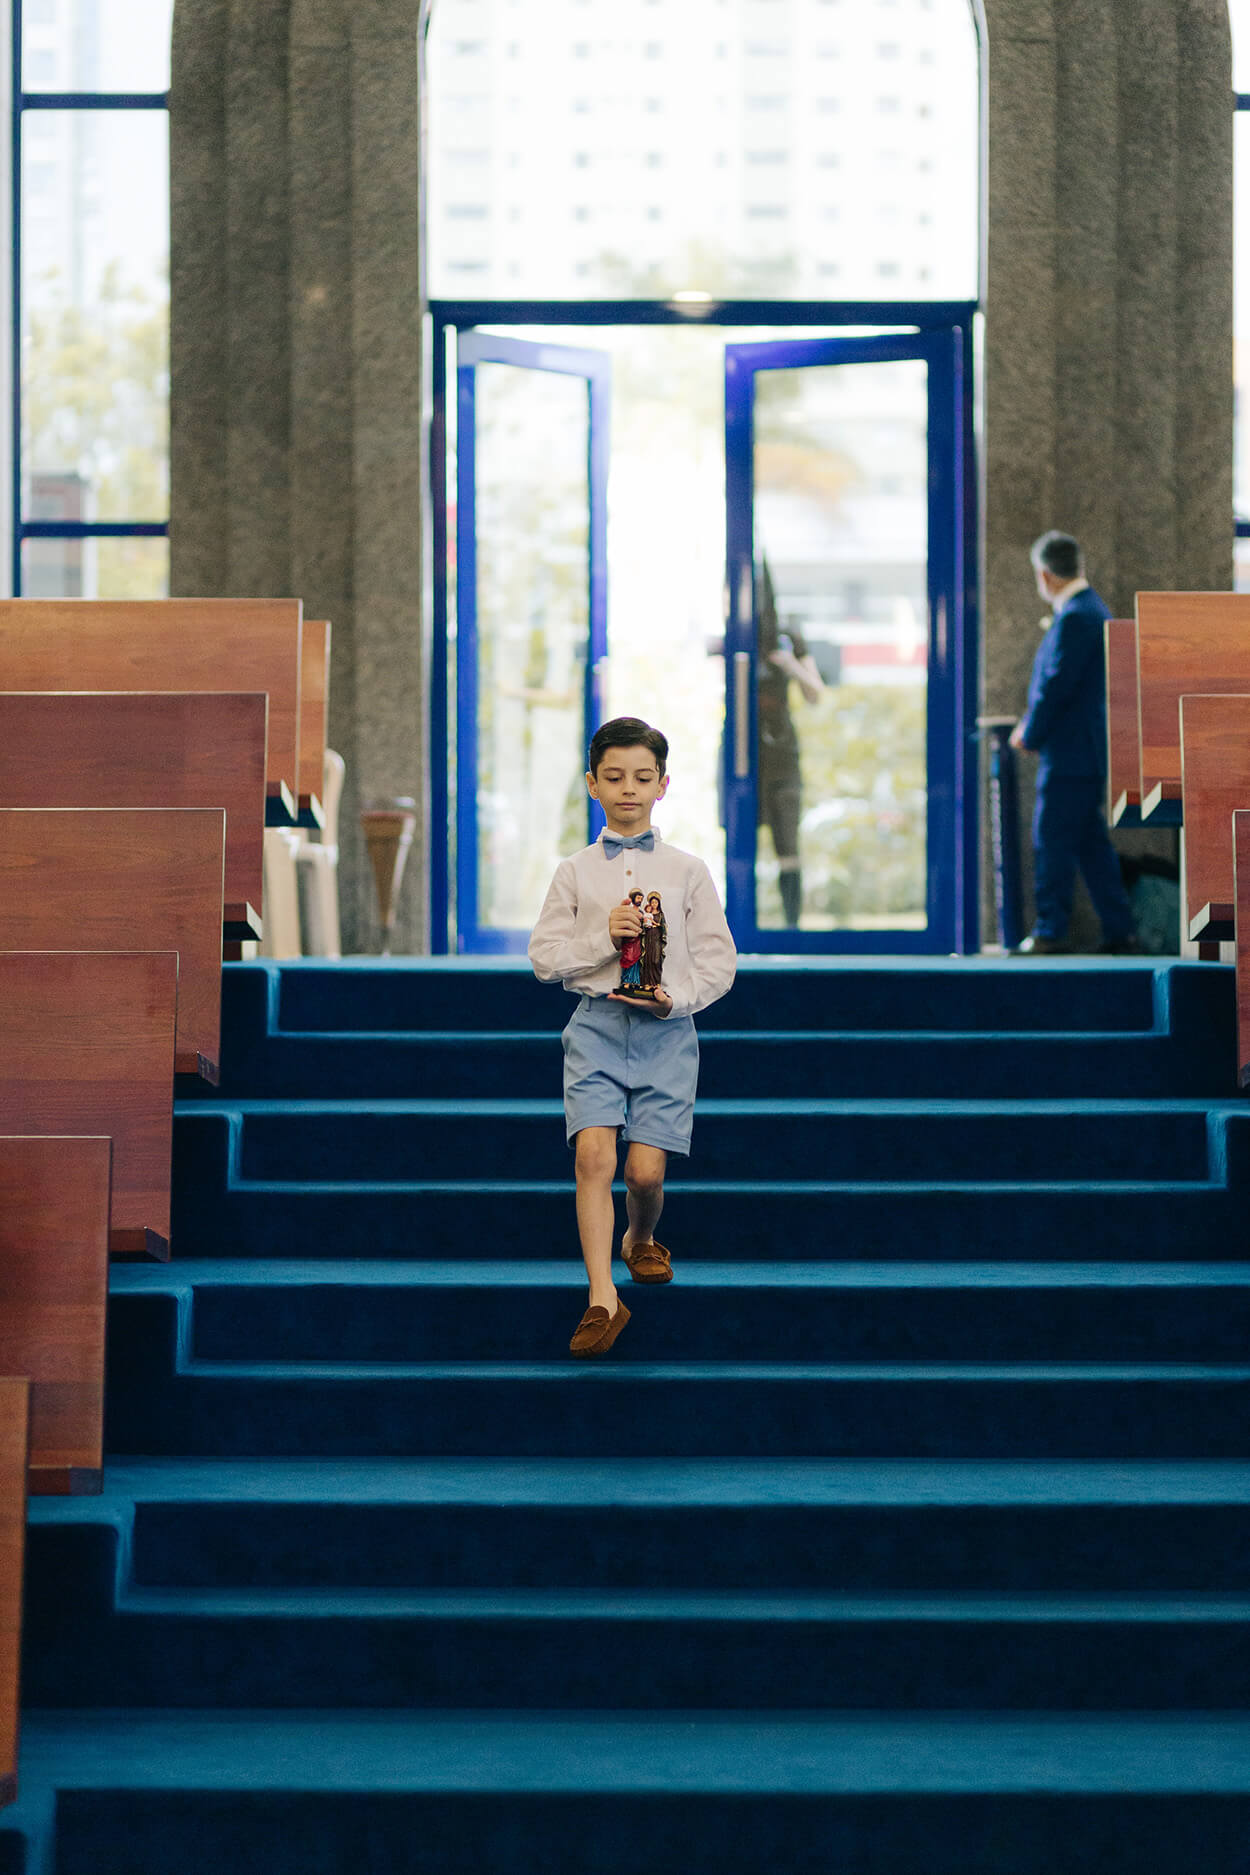 pajem levando estátua de santo enquanto desce as escadas da igreja